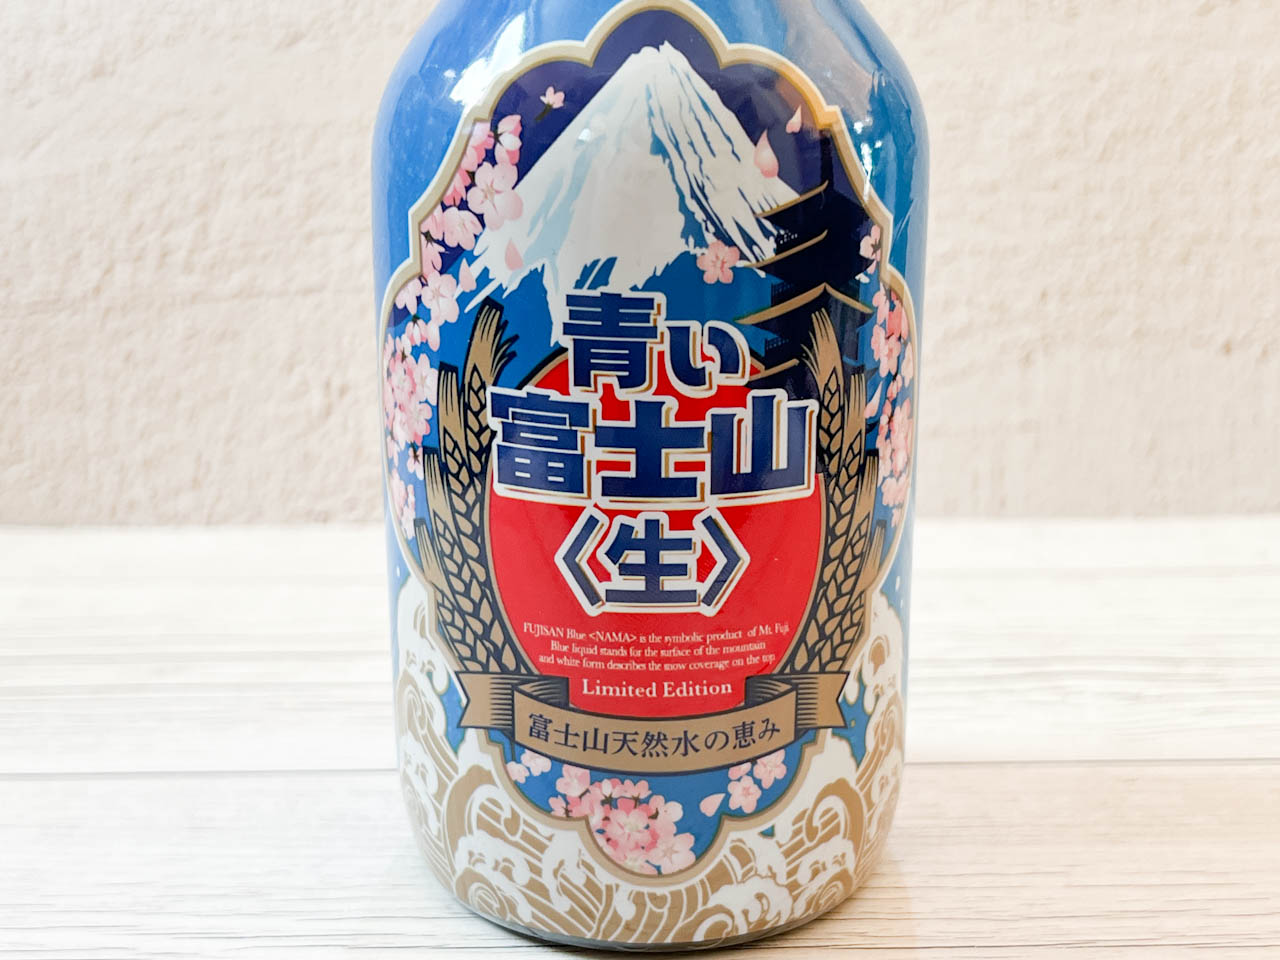 ボトルには、雪が積もった青い富士山のイラストと、桜がクールにデザインされています